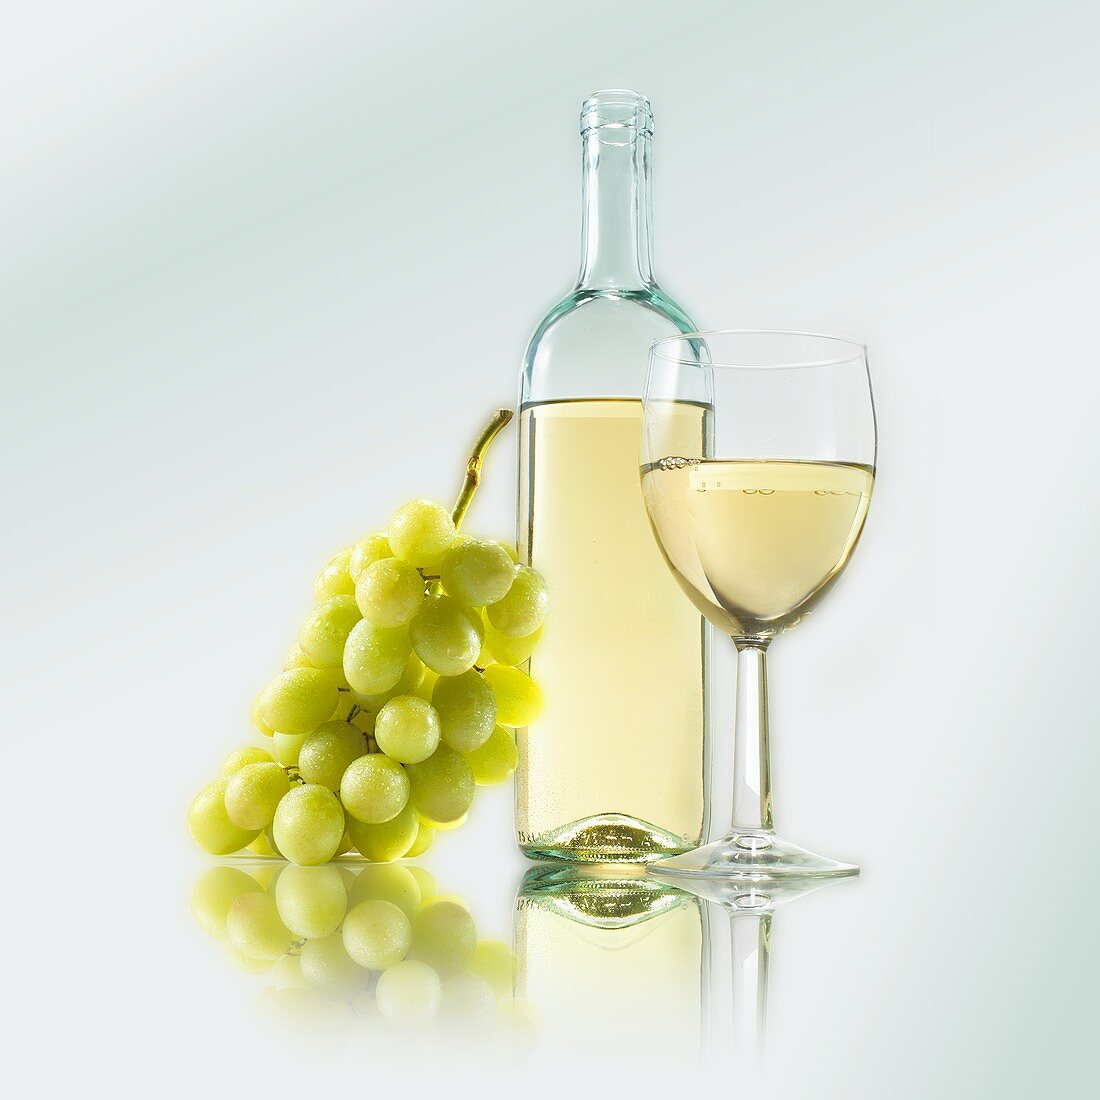 Weissweinglas, Weissweinflasche und Weintrauben